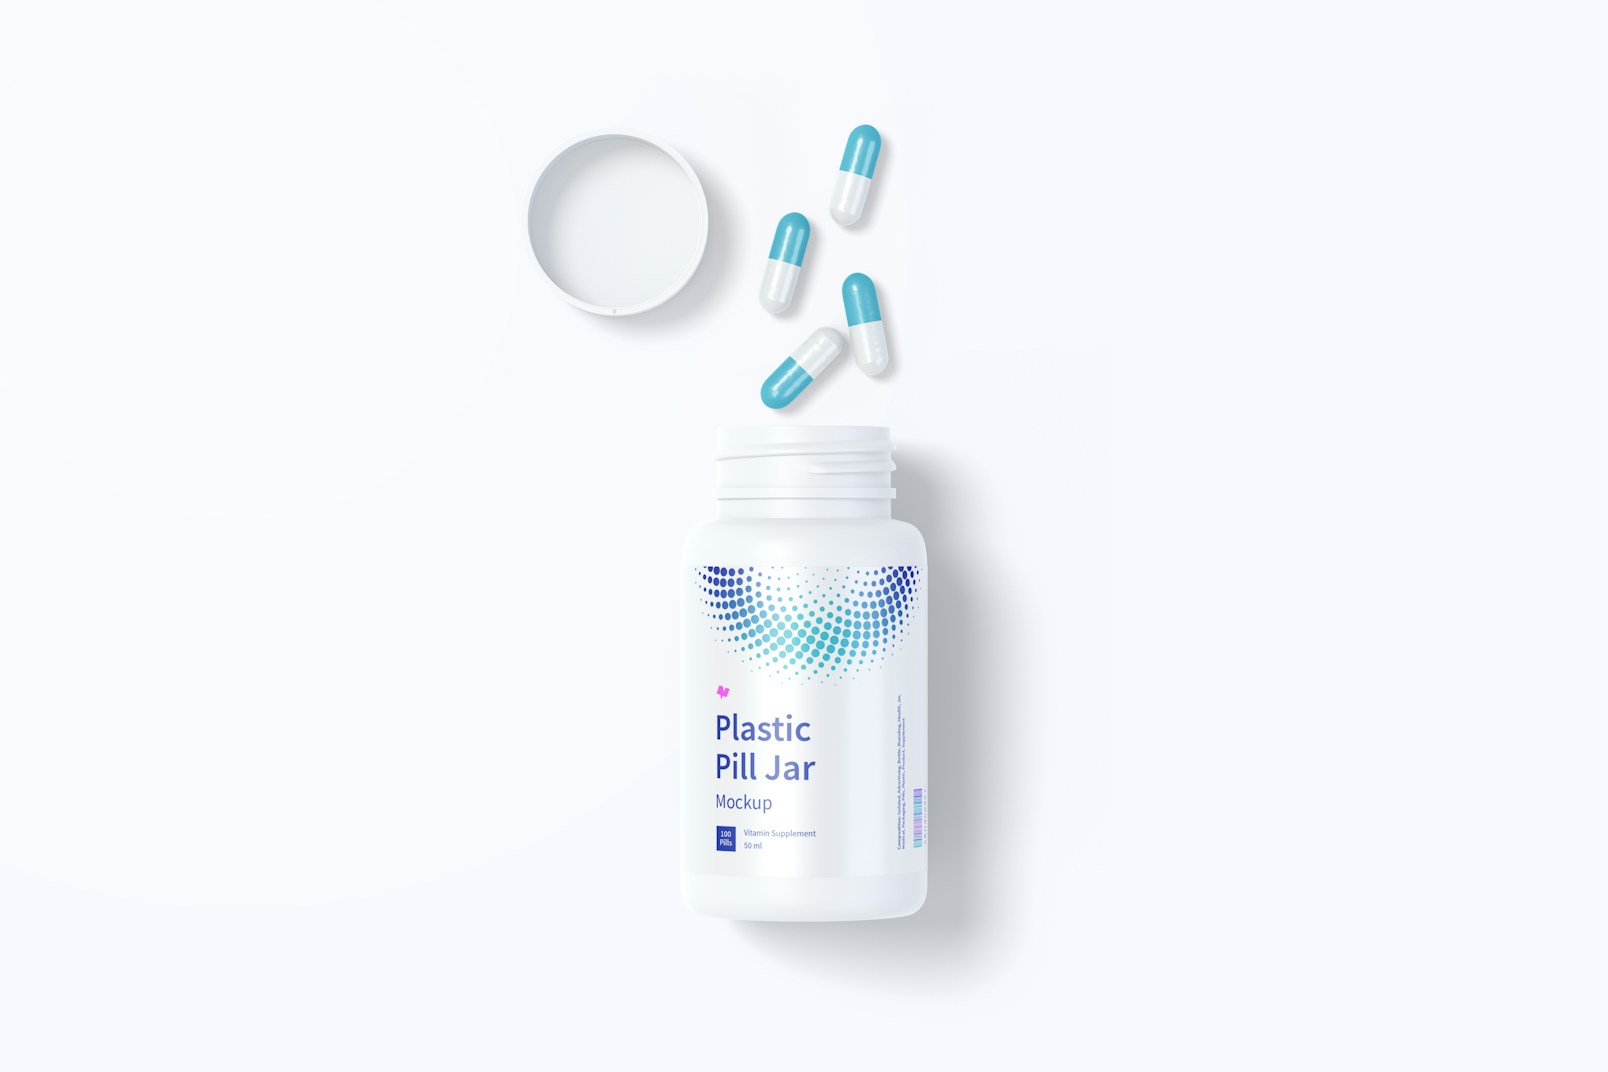 Plastic Pill Jar Mockup, Top View